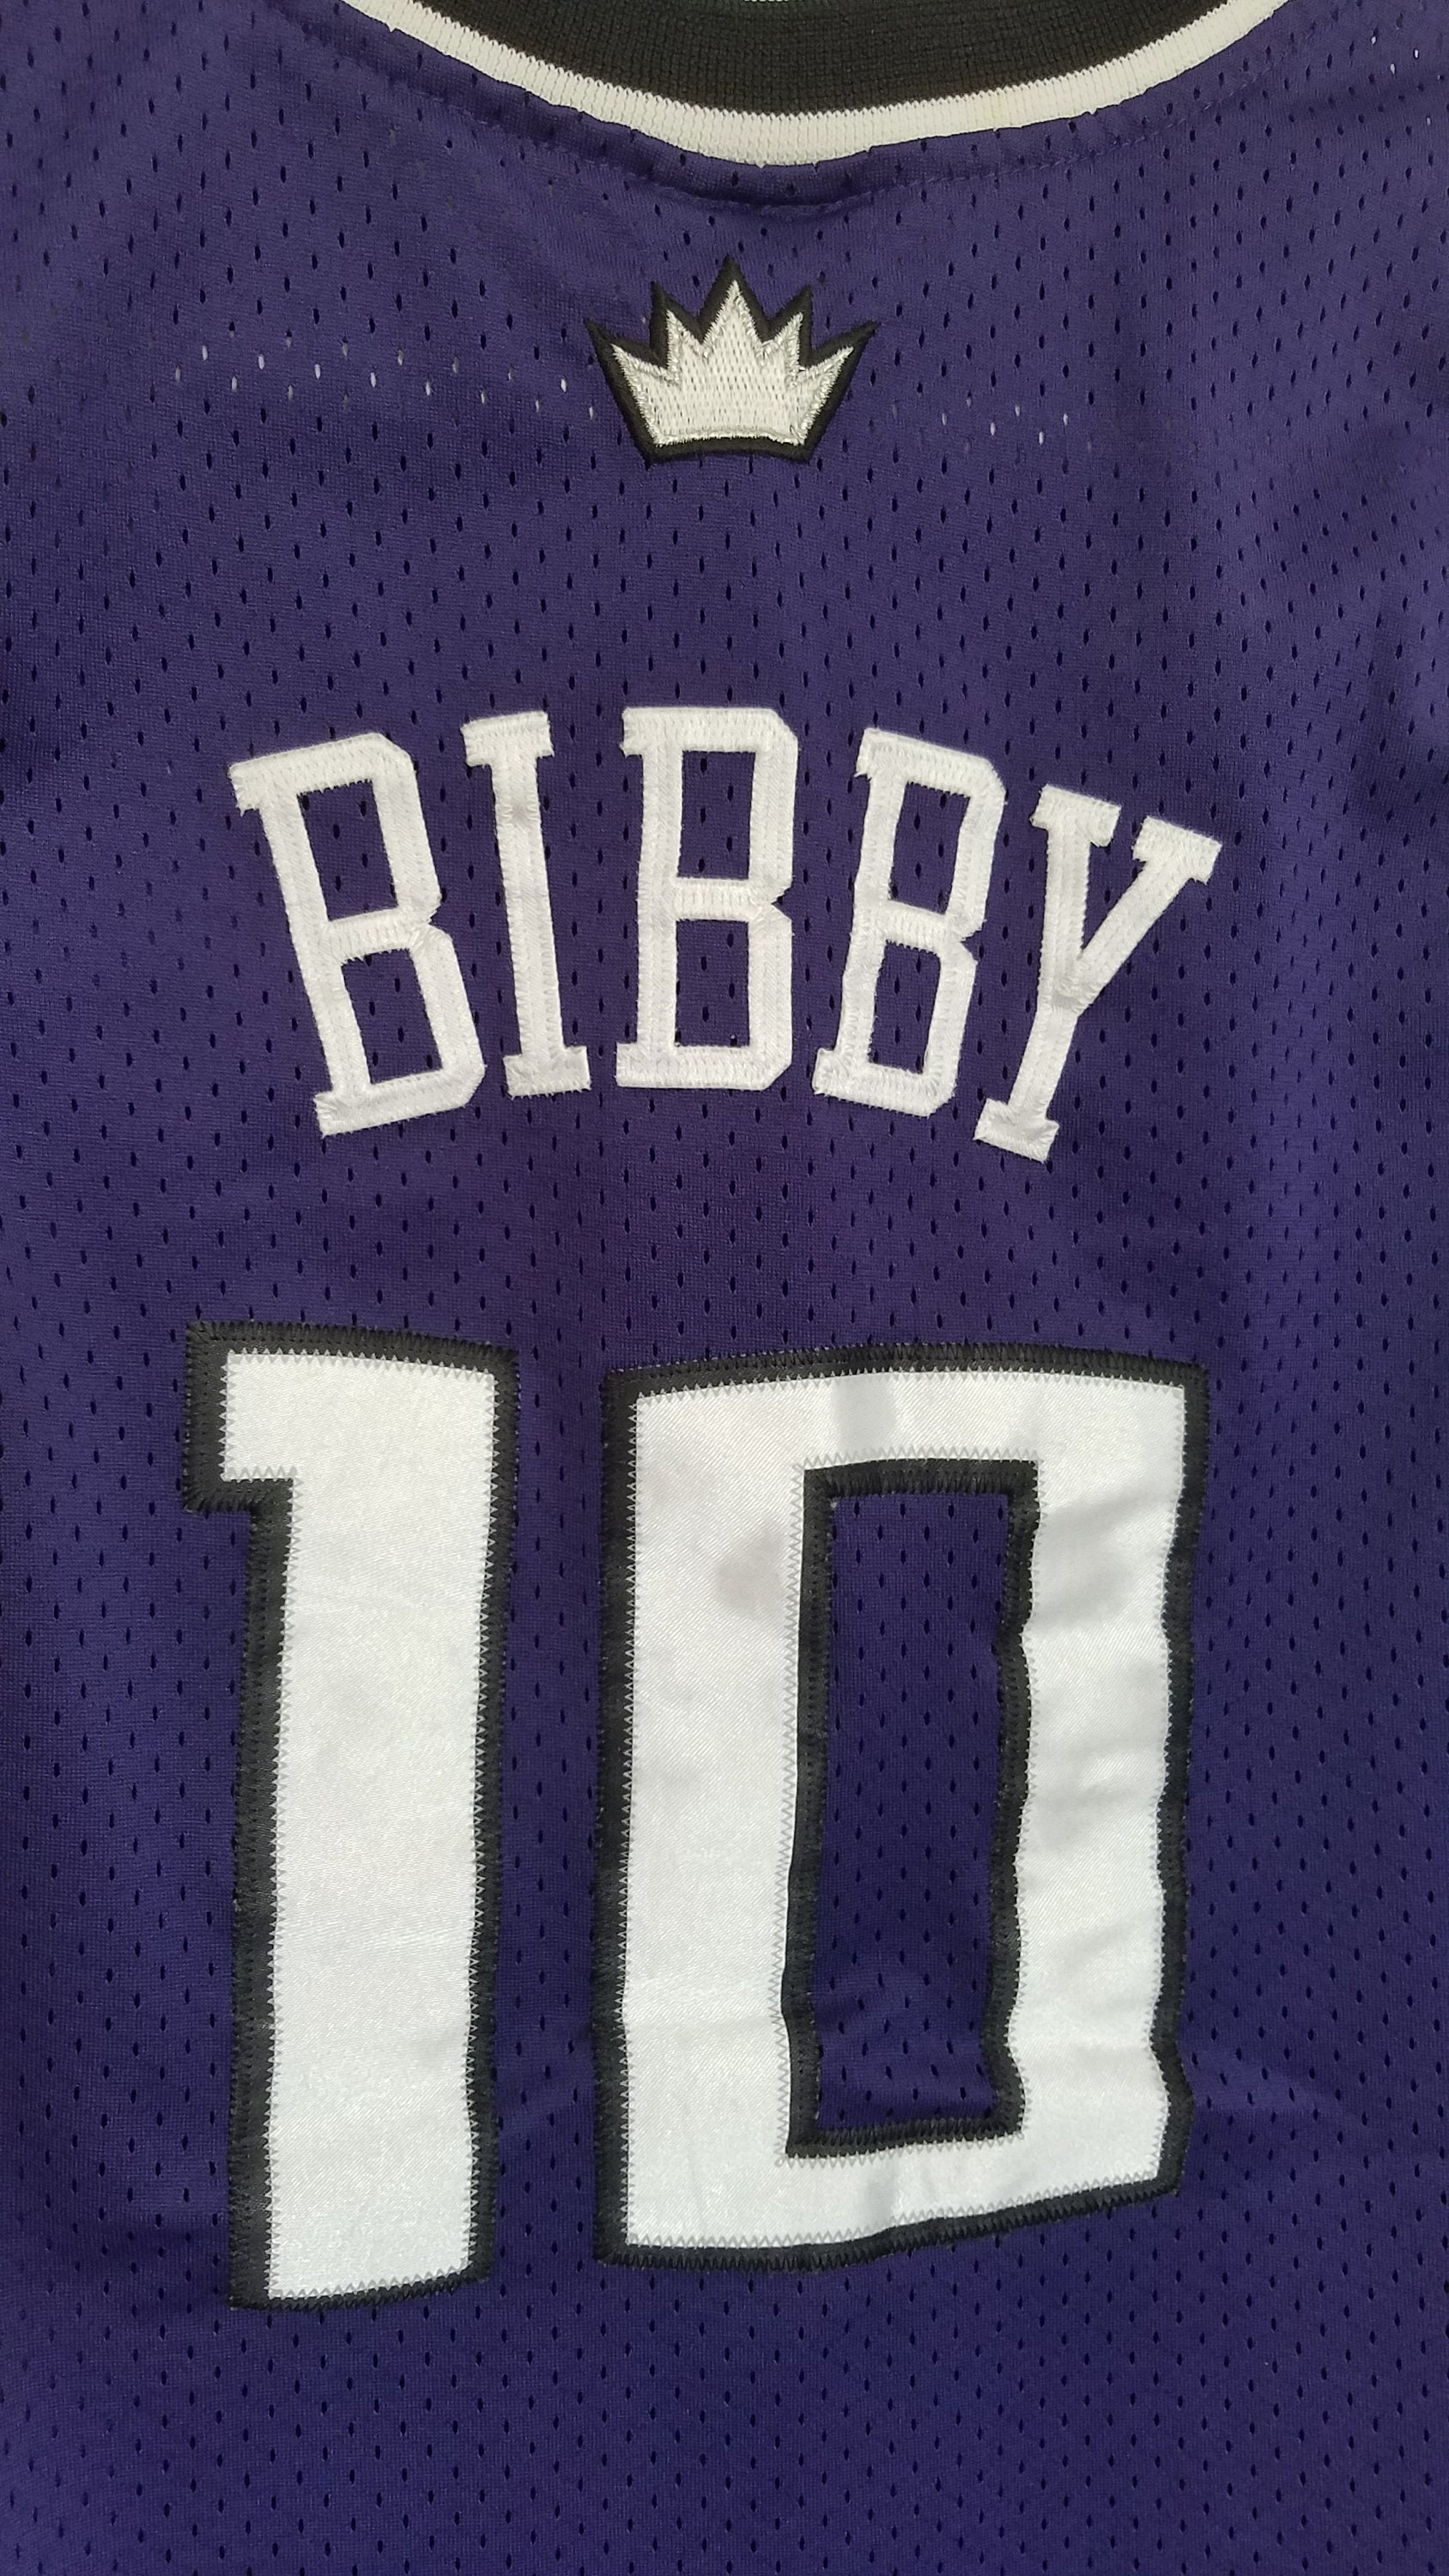 Vintage NBA Nike Sacramento Kings Mike Bibby Jersey 10 Mens XL Sewn